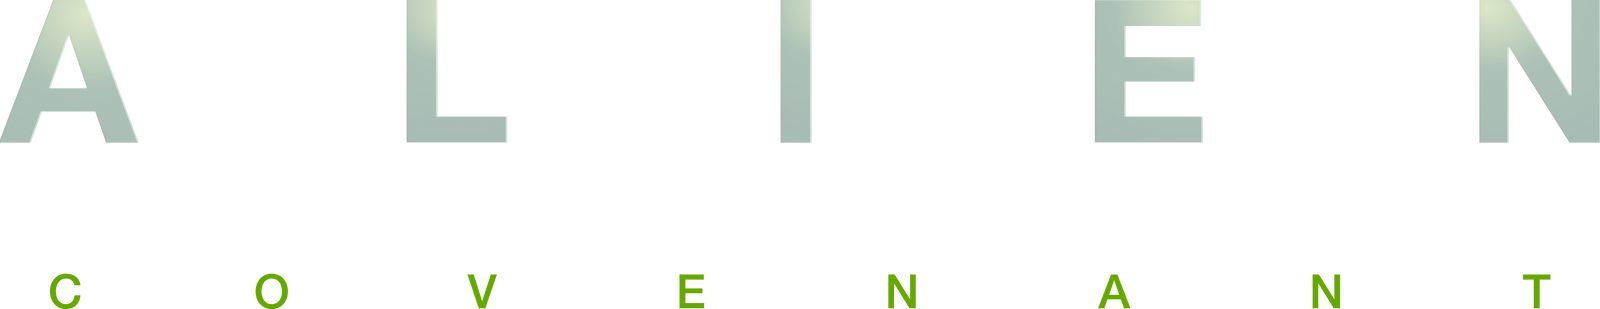 Alien: Covenant Logo